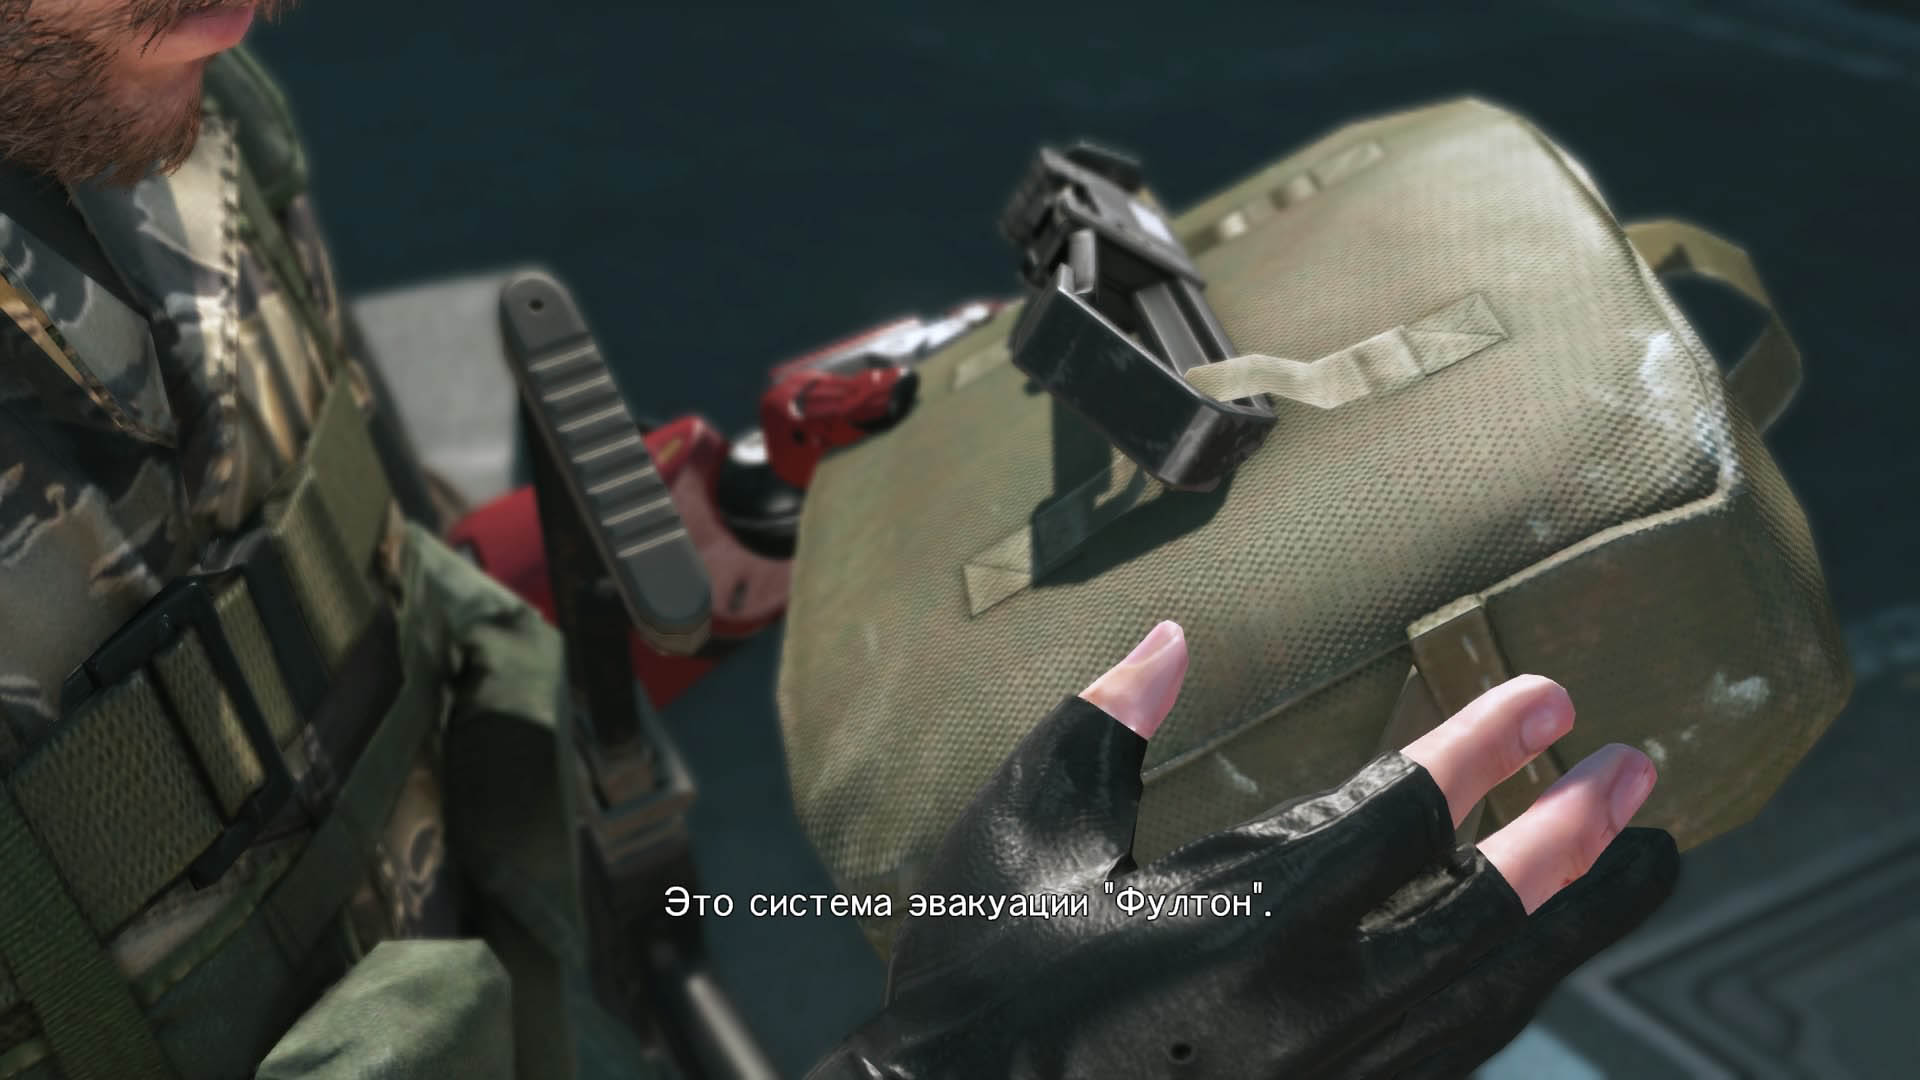 Metal Gear Solid V: The Phantom Pain Пройден инструктаж по пользованию системой "Фултон"